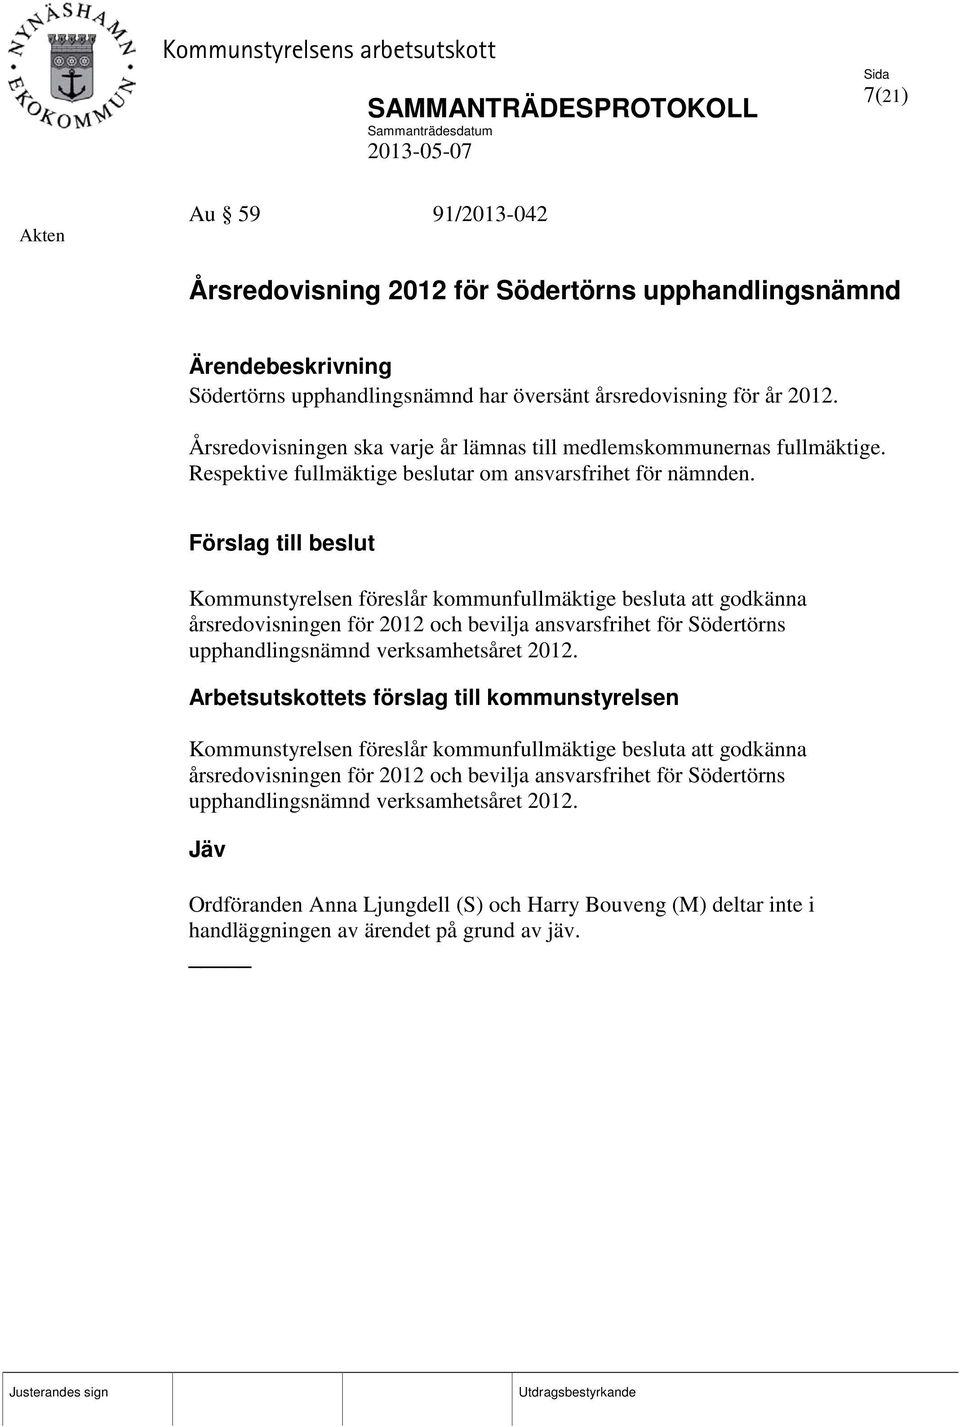 Kommunstyrelsen föreslår kommunfullmäktige besluta att godkänna årsredovisningen för 2012 och bevilja ansvarsfrihet för Södertörns upphandlingsnämnd verksamhetsåret 2012.